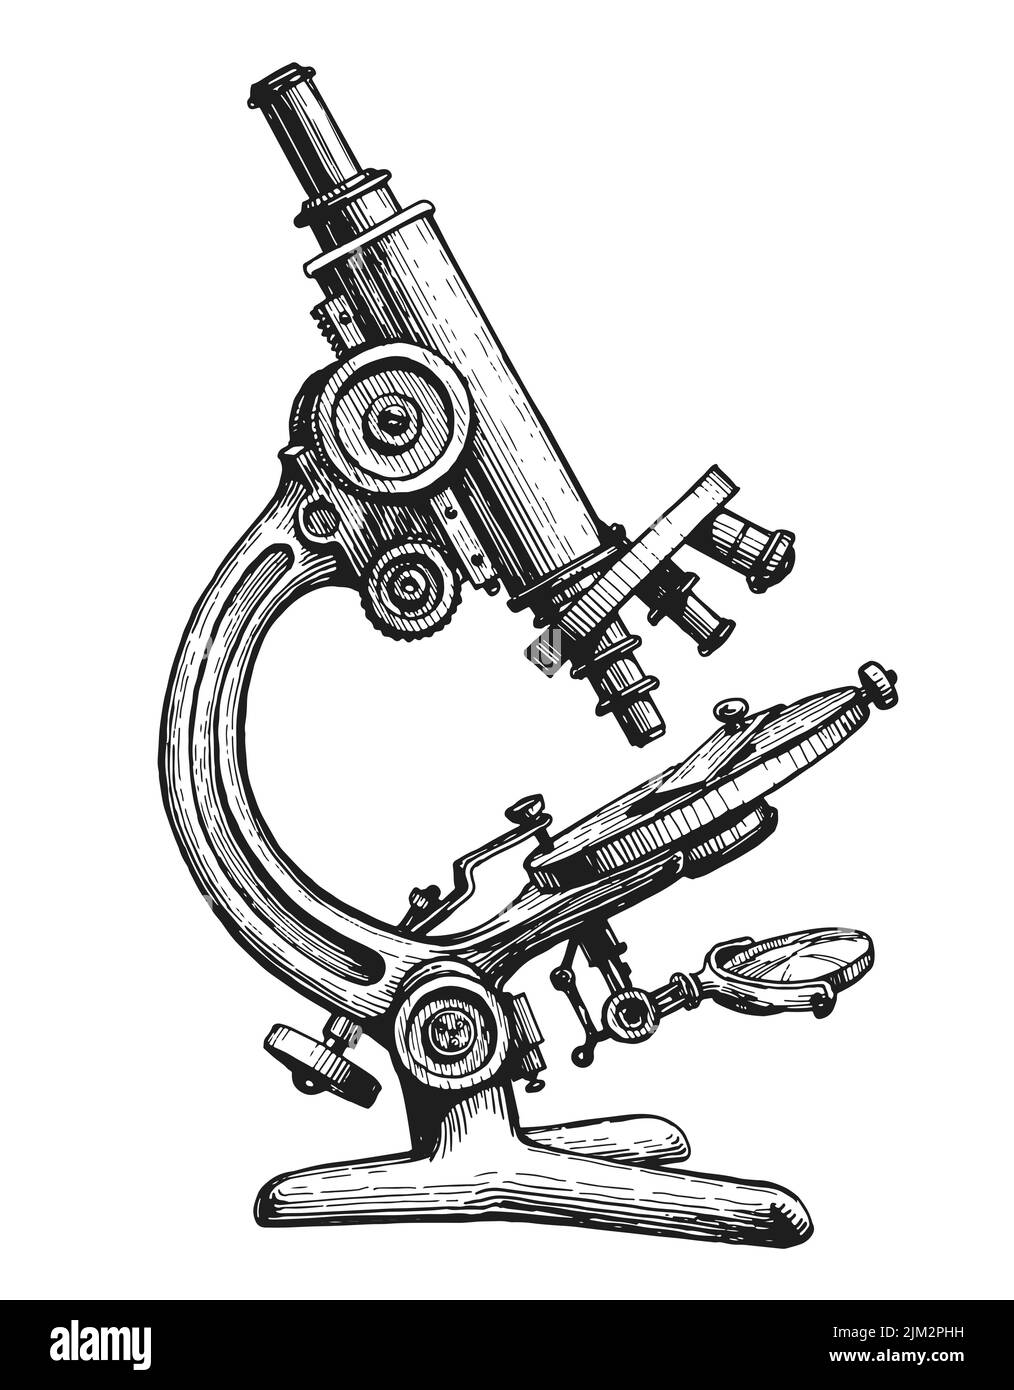 Microscope rétro à croquis dessiné à la main. Tests médicaux, concept de laboratoire chimique. Illustration vectorielle isolée Illustration de Vecteur